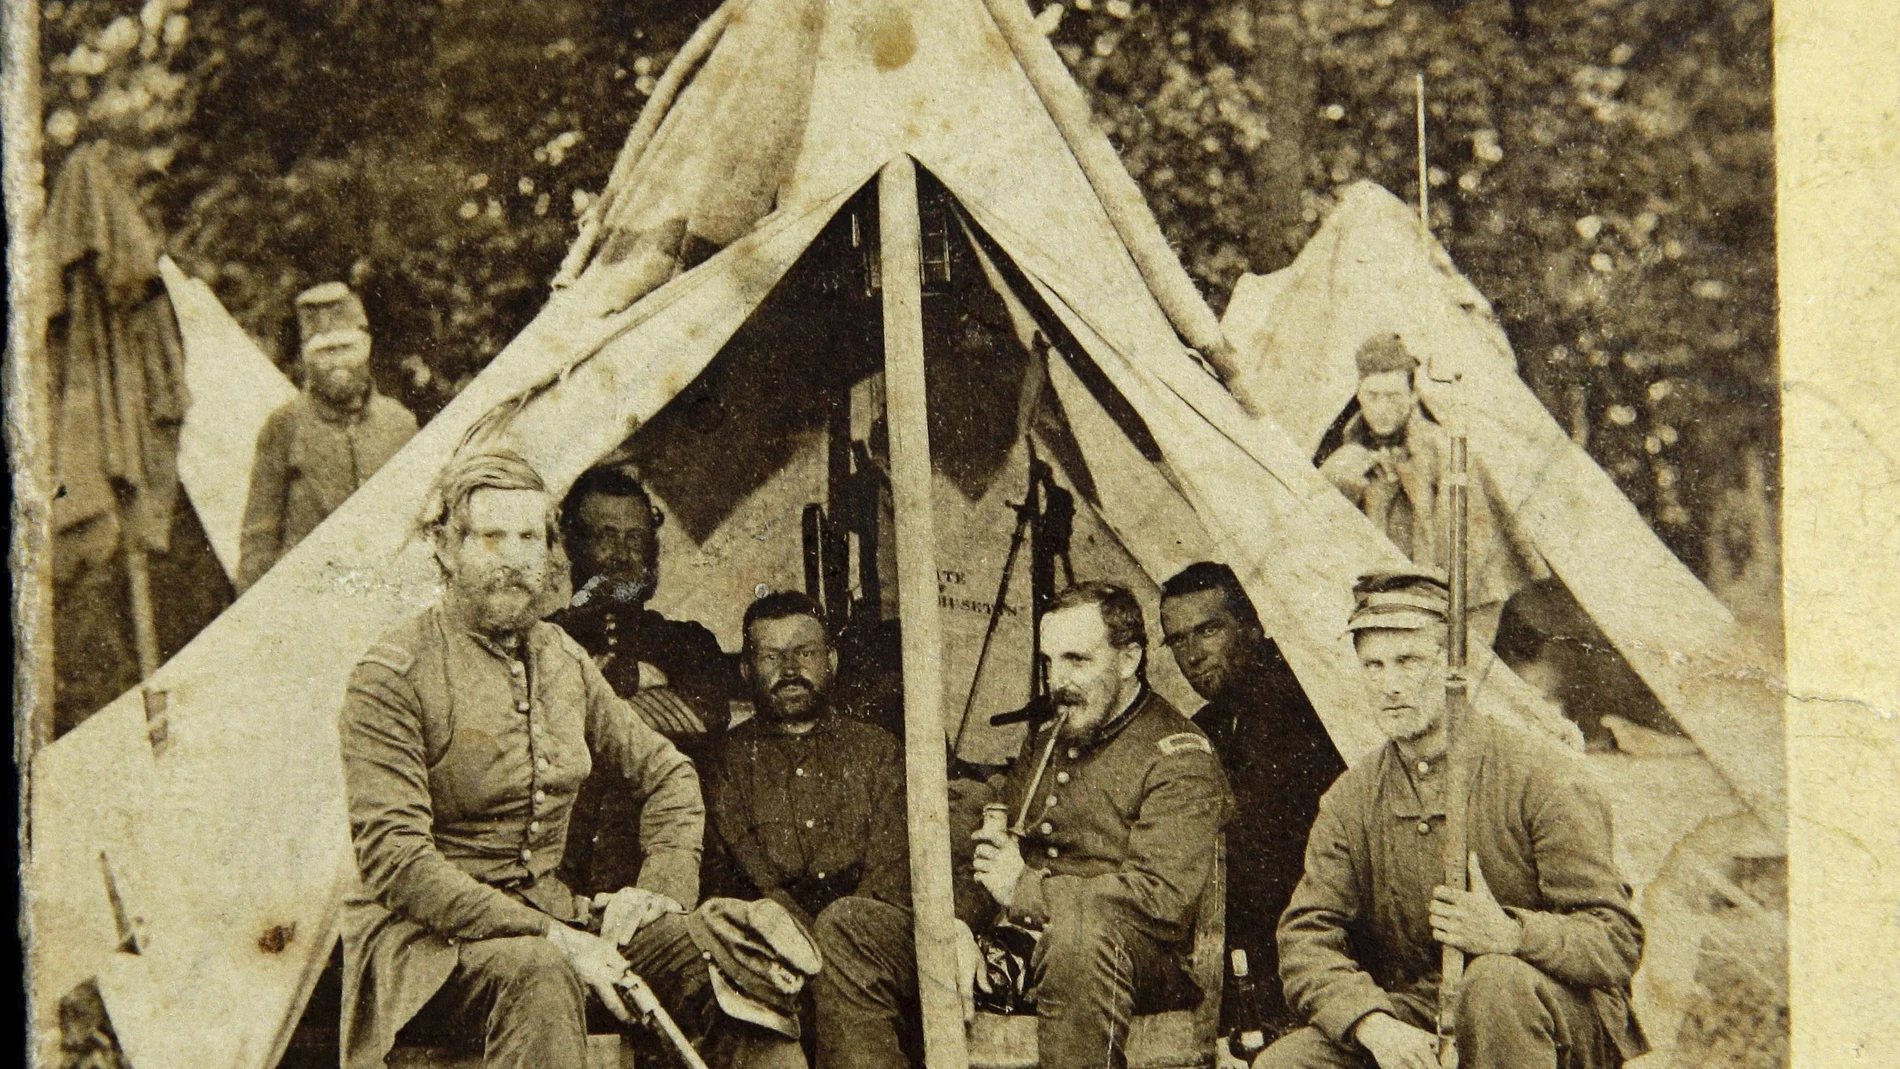 En esta imagen tomada en junio de 1861, el doctor Bowman Bigelow Breed fuma en una pipa rodeado por compañeros de la retaguardia